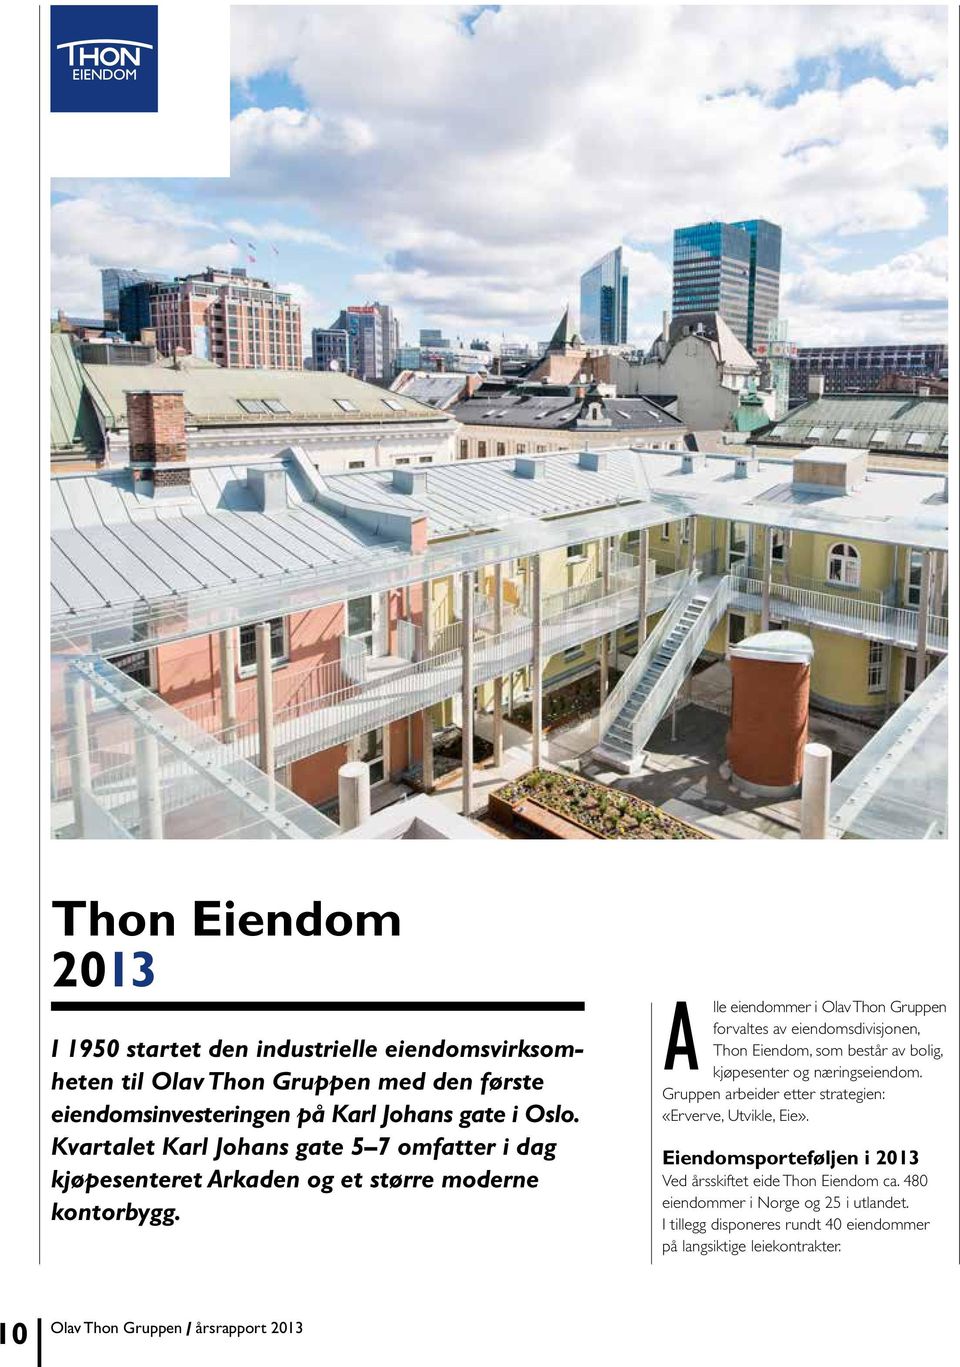 A lle eiendommer i Olav Thon Gruppen forvaltes av eiendomsdivisjonen, Thon Eiendom, som består av bolig, kjøpesenter og næringseiendom.